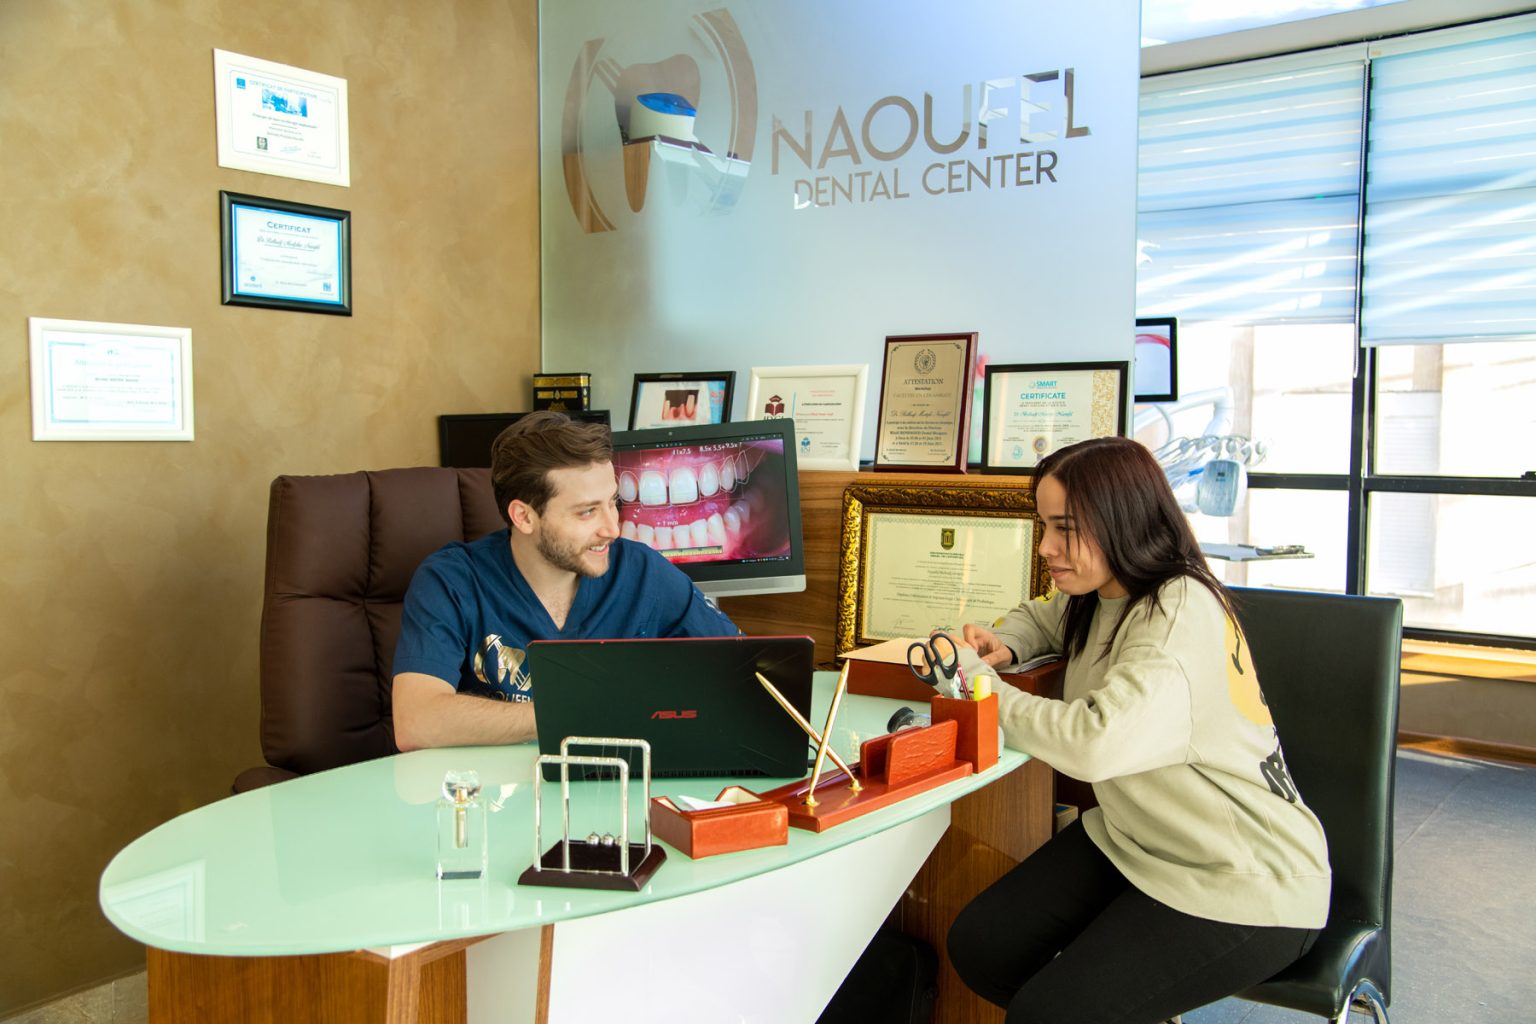 Consultation avec Dr Naoufel, chirurgien-dentiste spécialisé en dentisterie esthétique pour plan de traitement avec Hollywood smile et Implant dentaire au cabinet dentaire à Constantine en Algérie